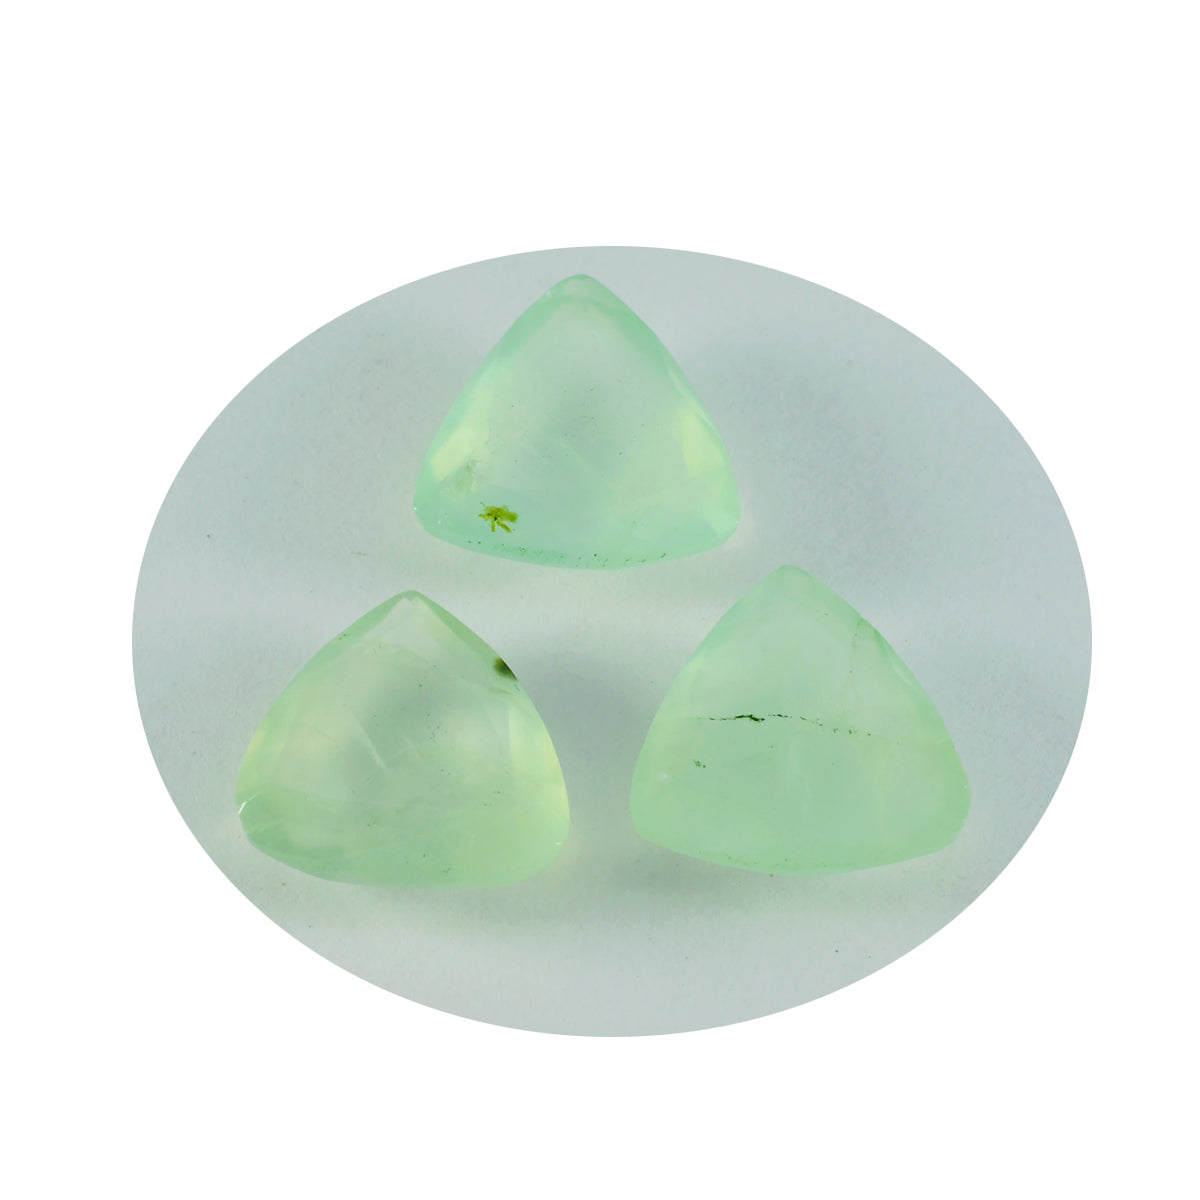 riyogems 1 pieza de prehnita verde facetada de 7x7 mm con forma de billón, piedra preciosa suelta de excelente calidad